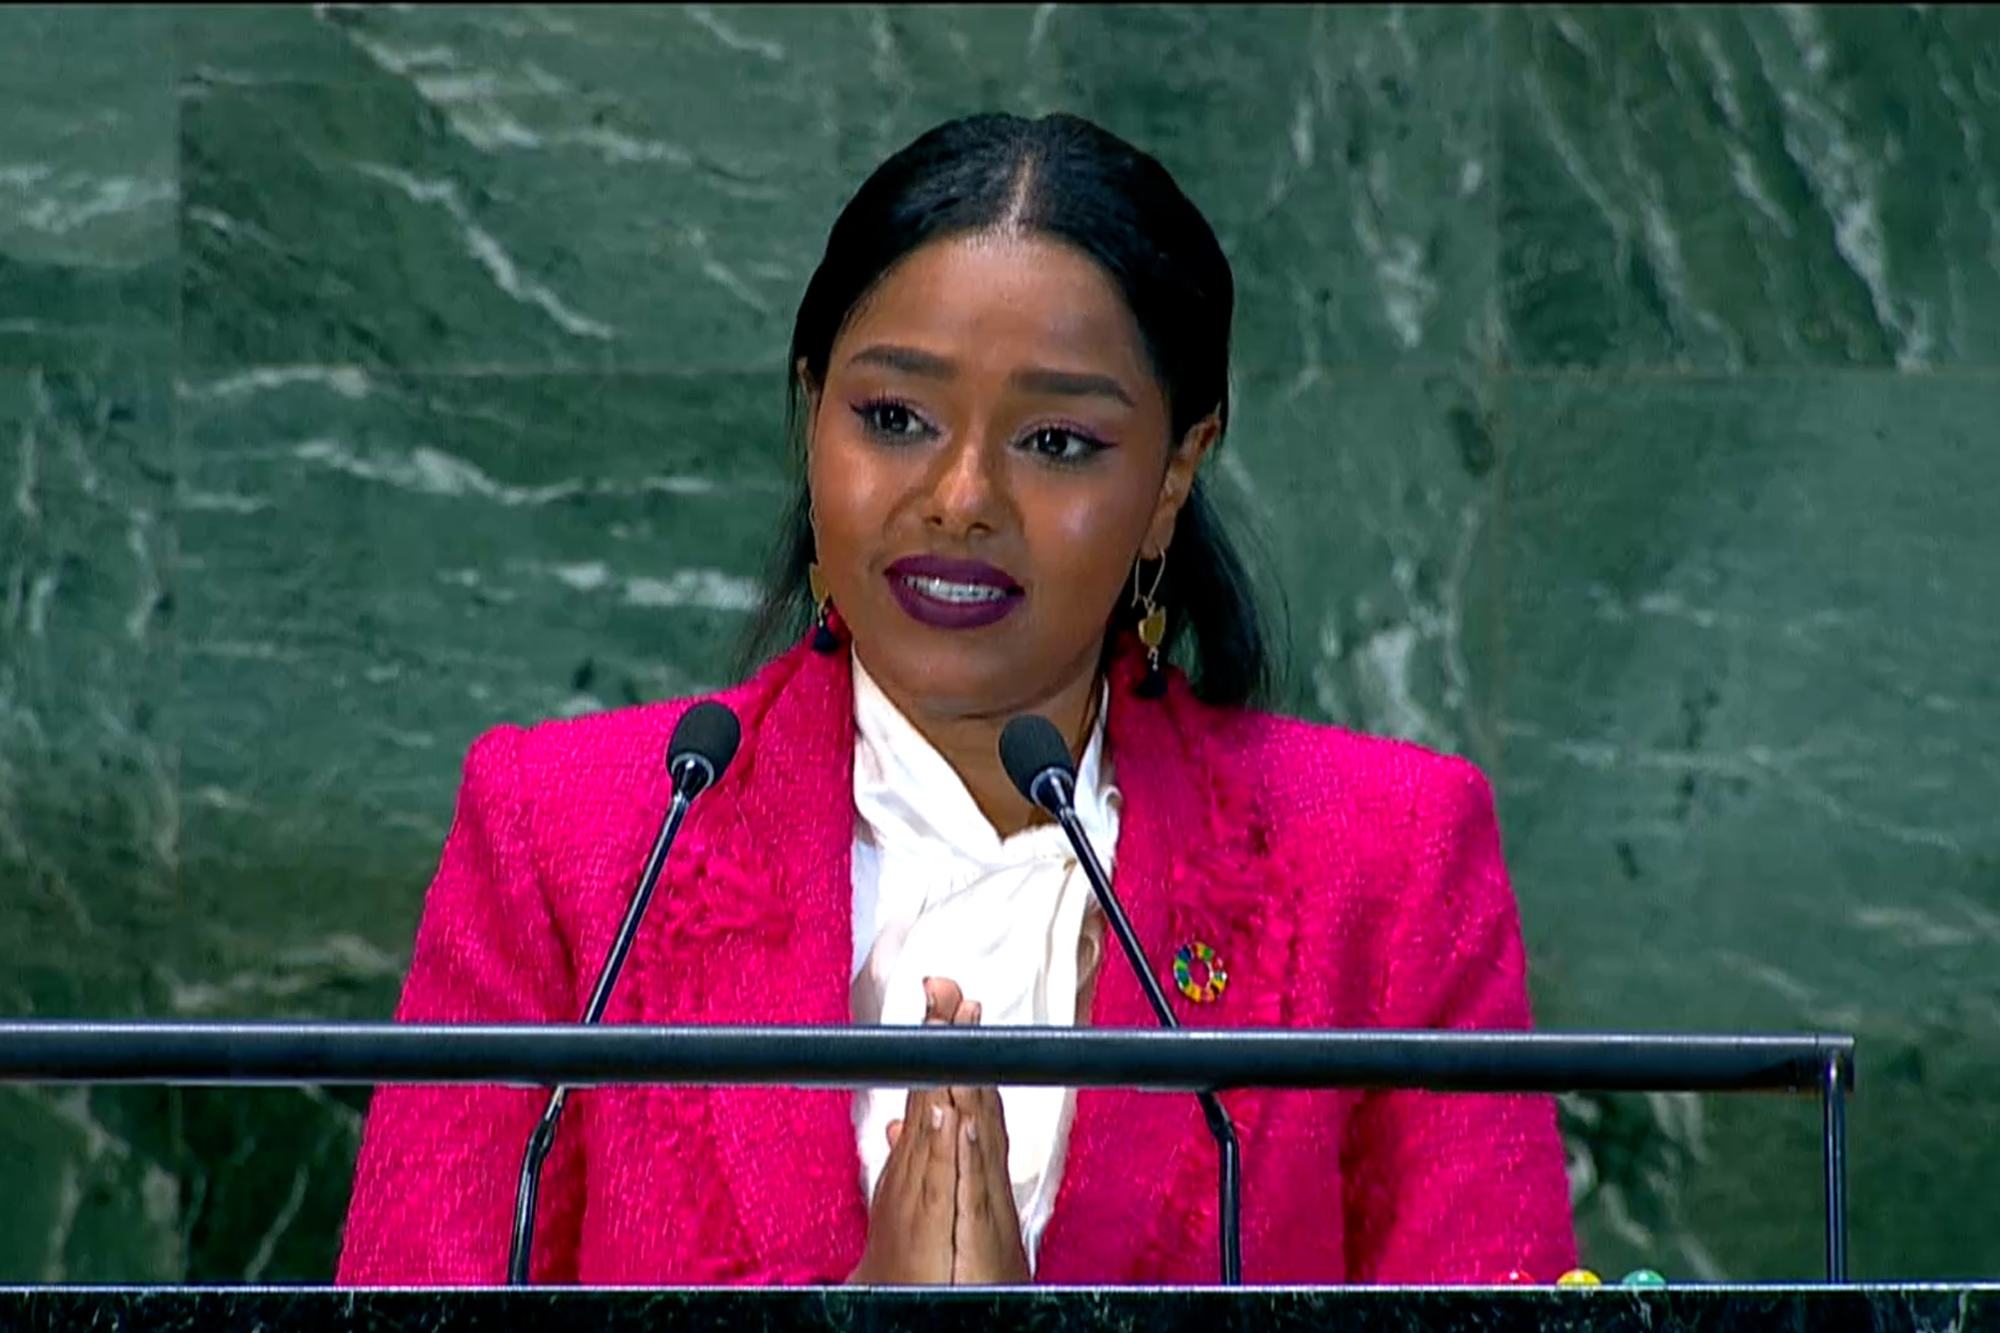 ميادة عادل، قائدة شبابية لأهداف التنمية المستدامة من السودان.